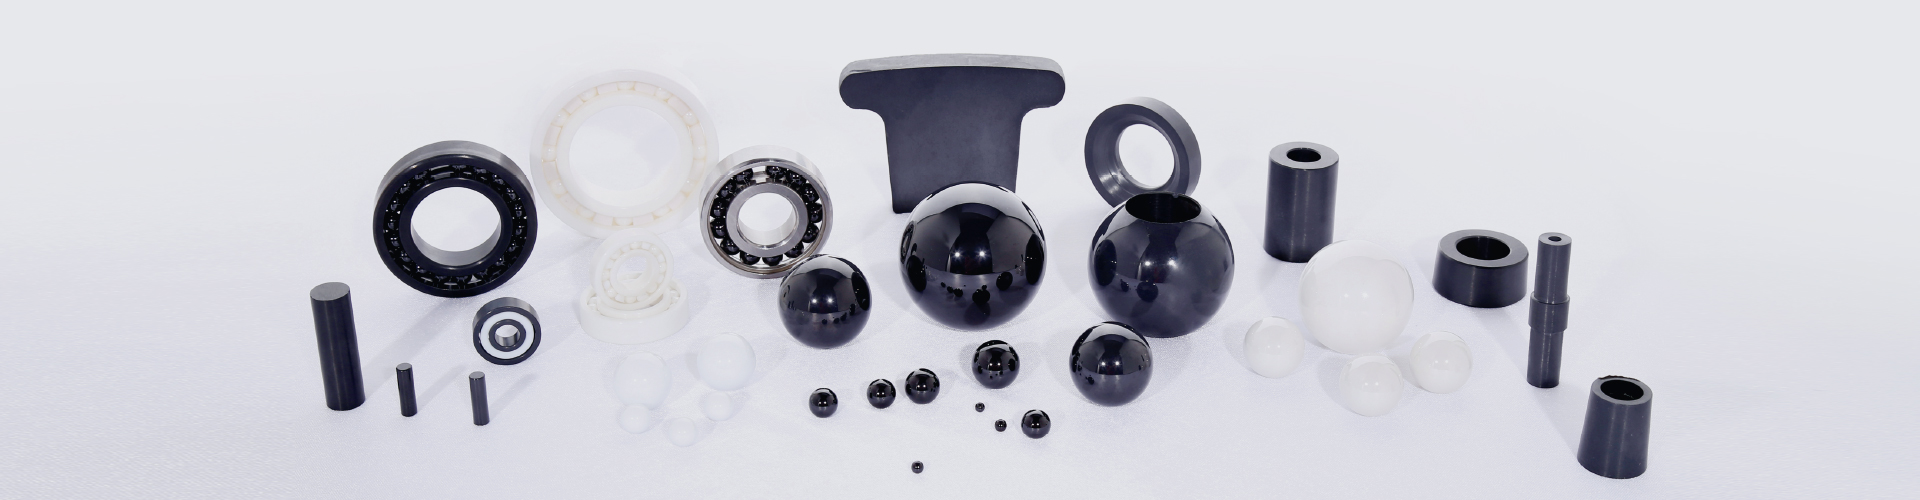 silicon nitride ball,zirconia ball,alumina ball,ceramic bearing,grinding media,Sinoma Advanced Nitride Ceramics Co., Ltd.